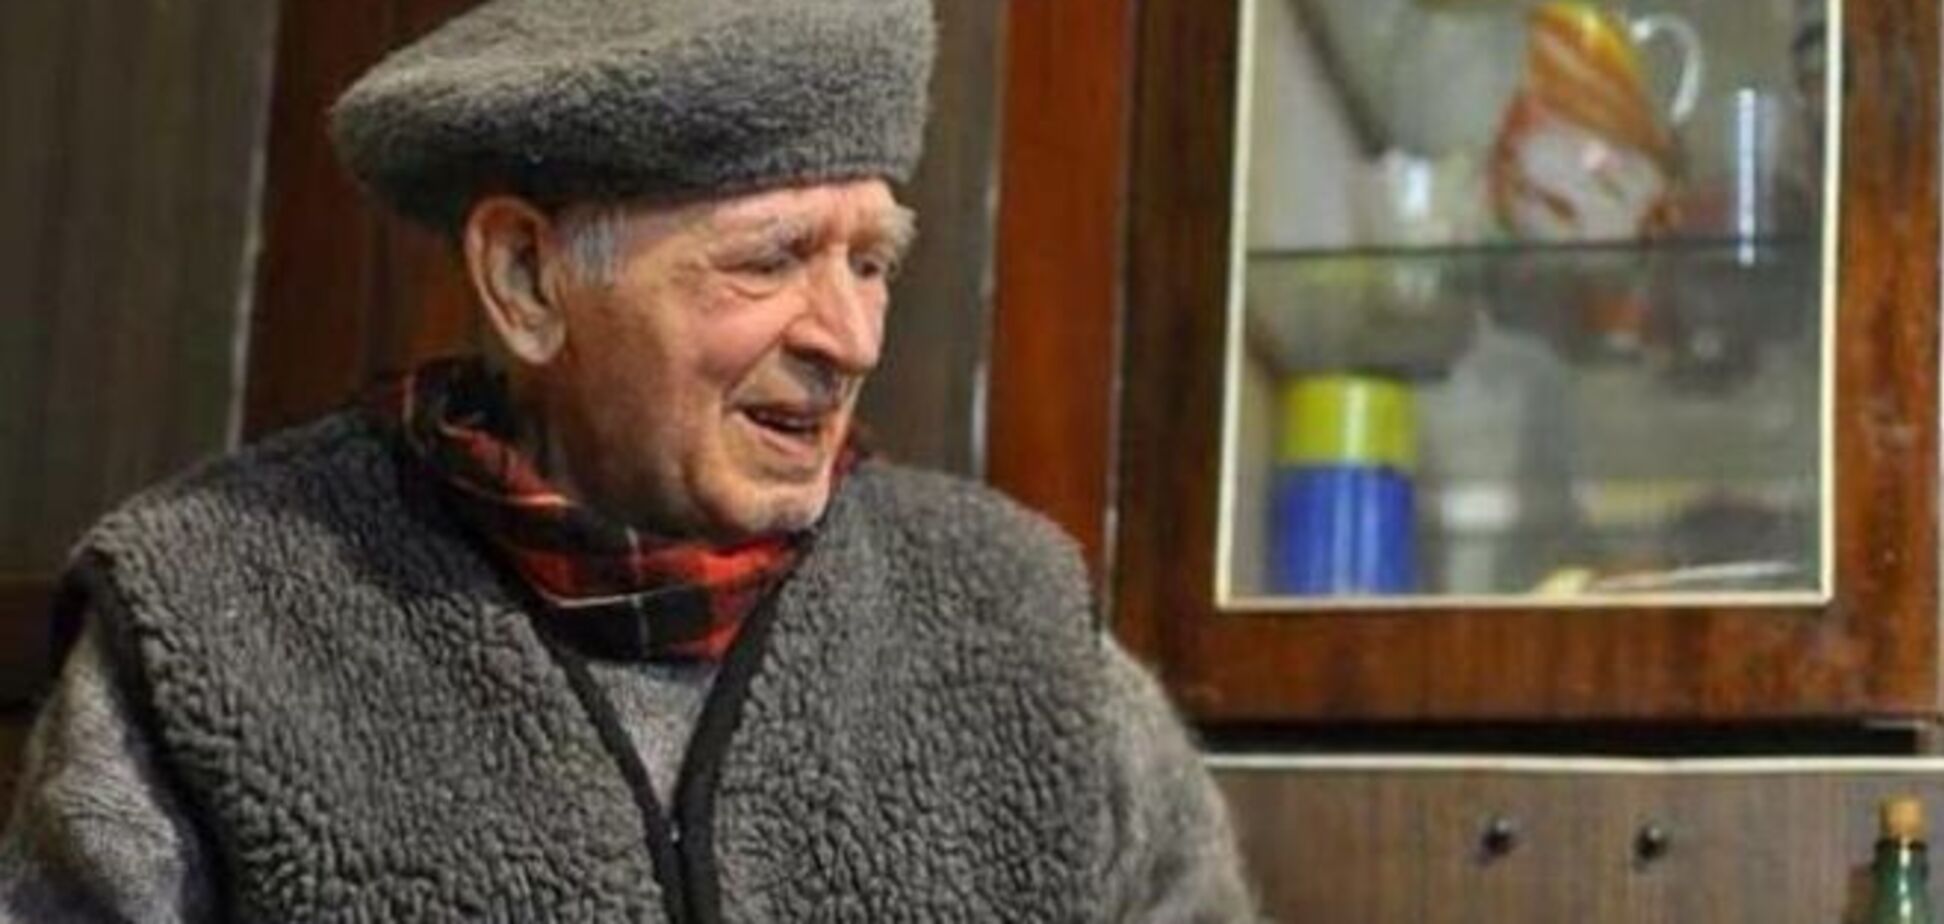 Умер 90-летний житель Ивано-Франковска, пожертвовавший на Евромайдан 10 тыс. грн